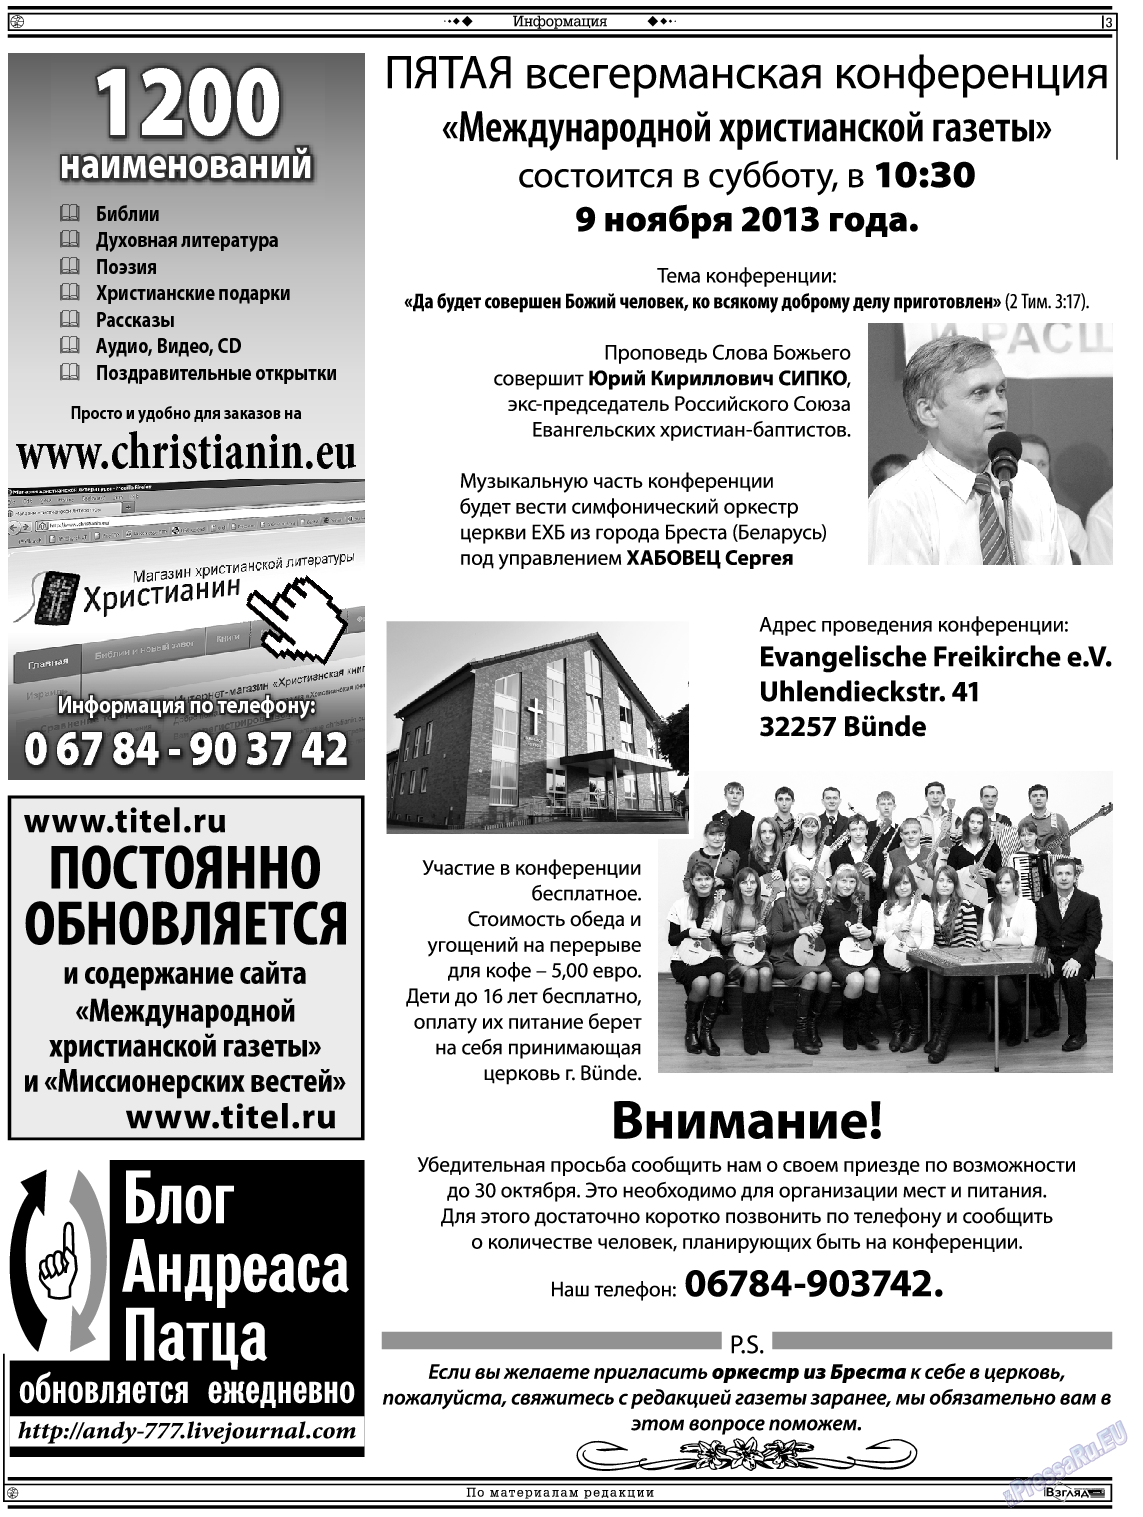 Христианская газета, газета. 2013 №10 стр.17